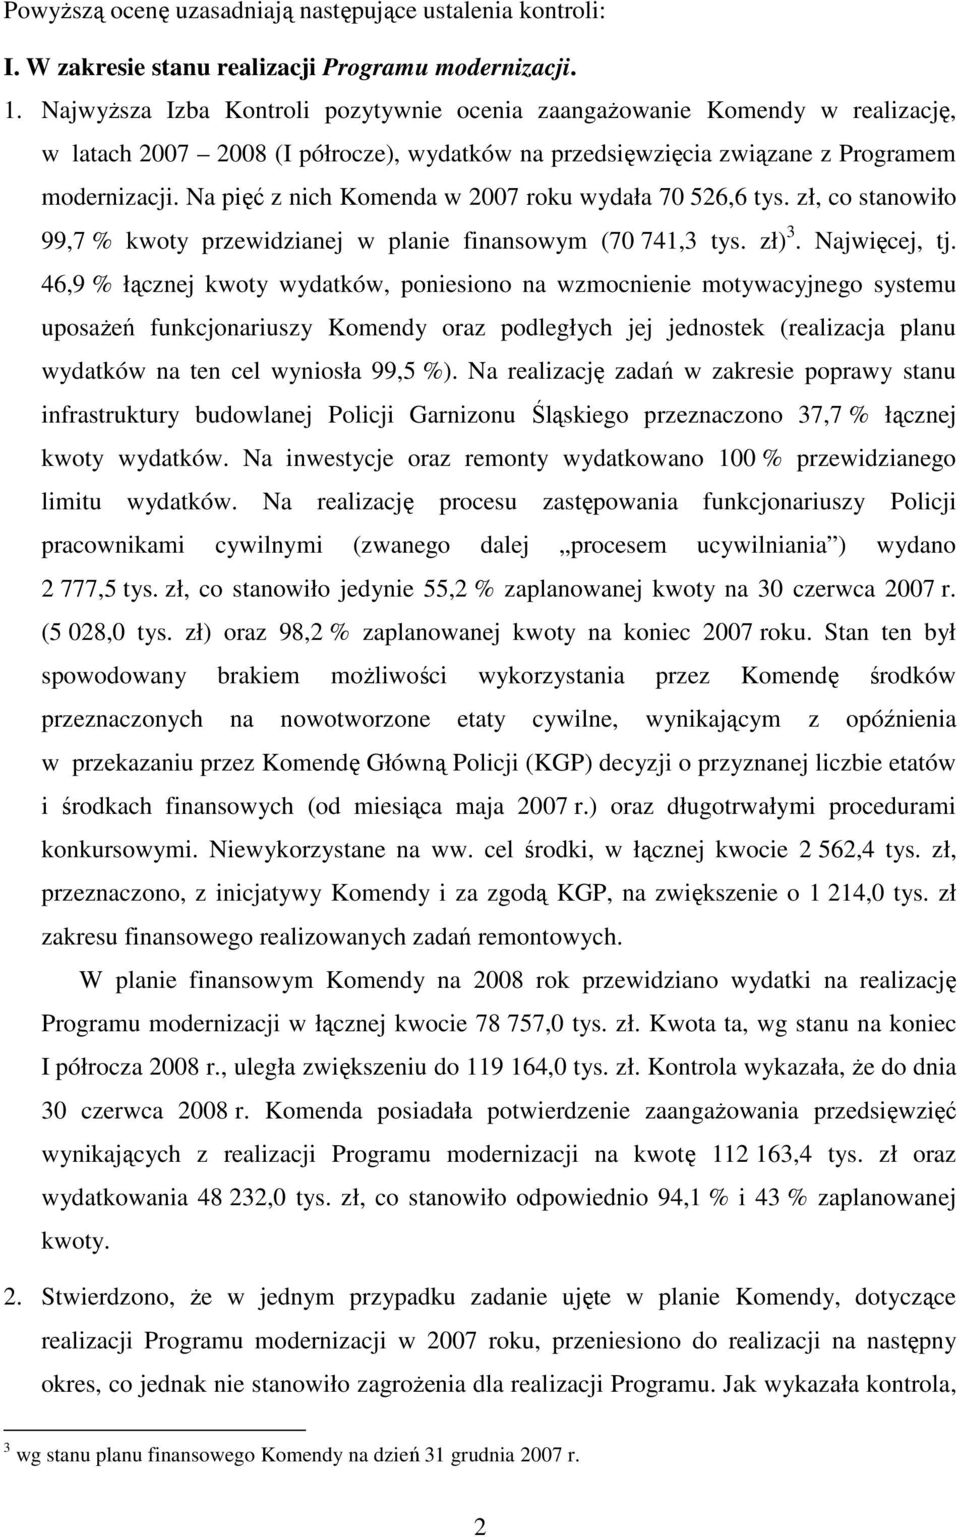 Na pięć z nich Komenda w 2007 roku wydała 70 526,6 tys. zł, co stanowiło 99,7 % kwoty przewidzianej w planie finansowym (70 741,3 tys. zł) 3. Najwięcej, tj.